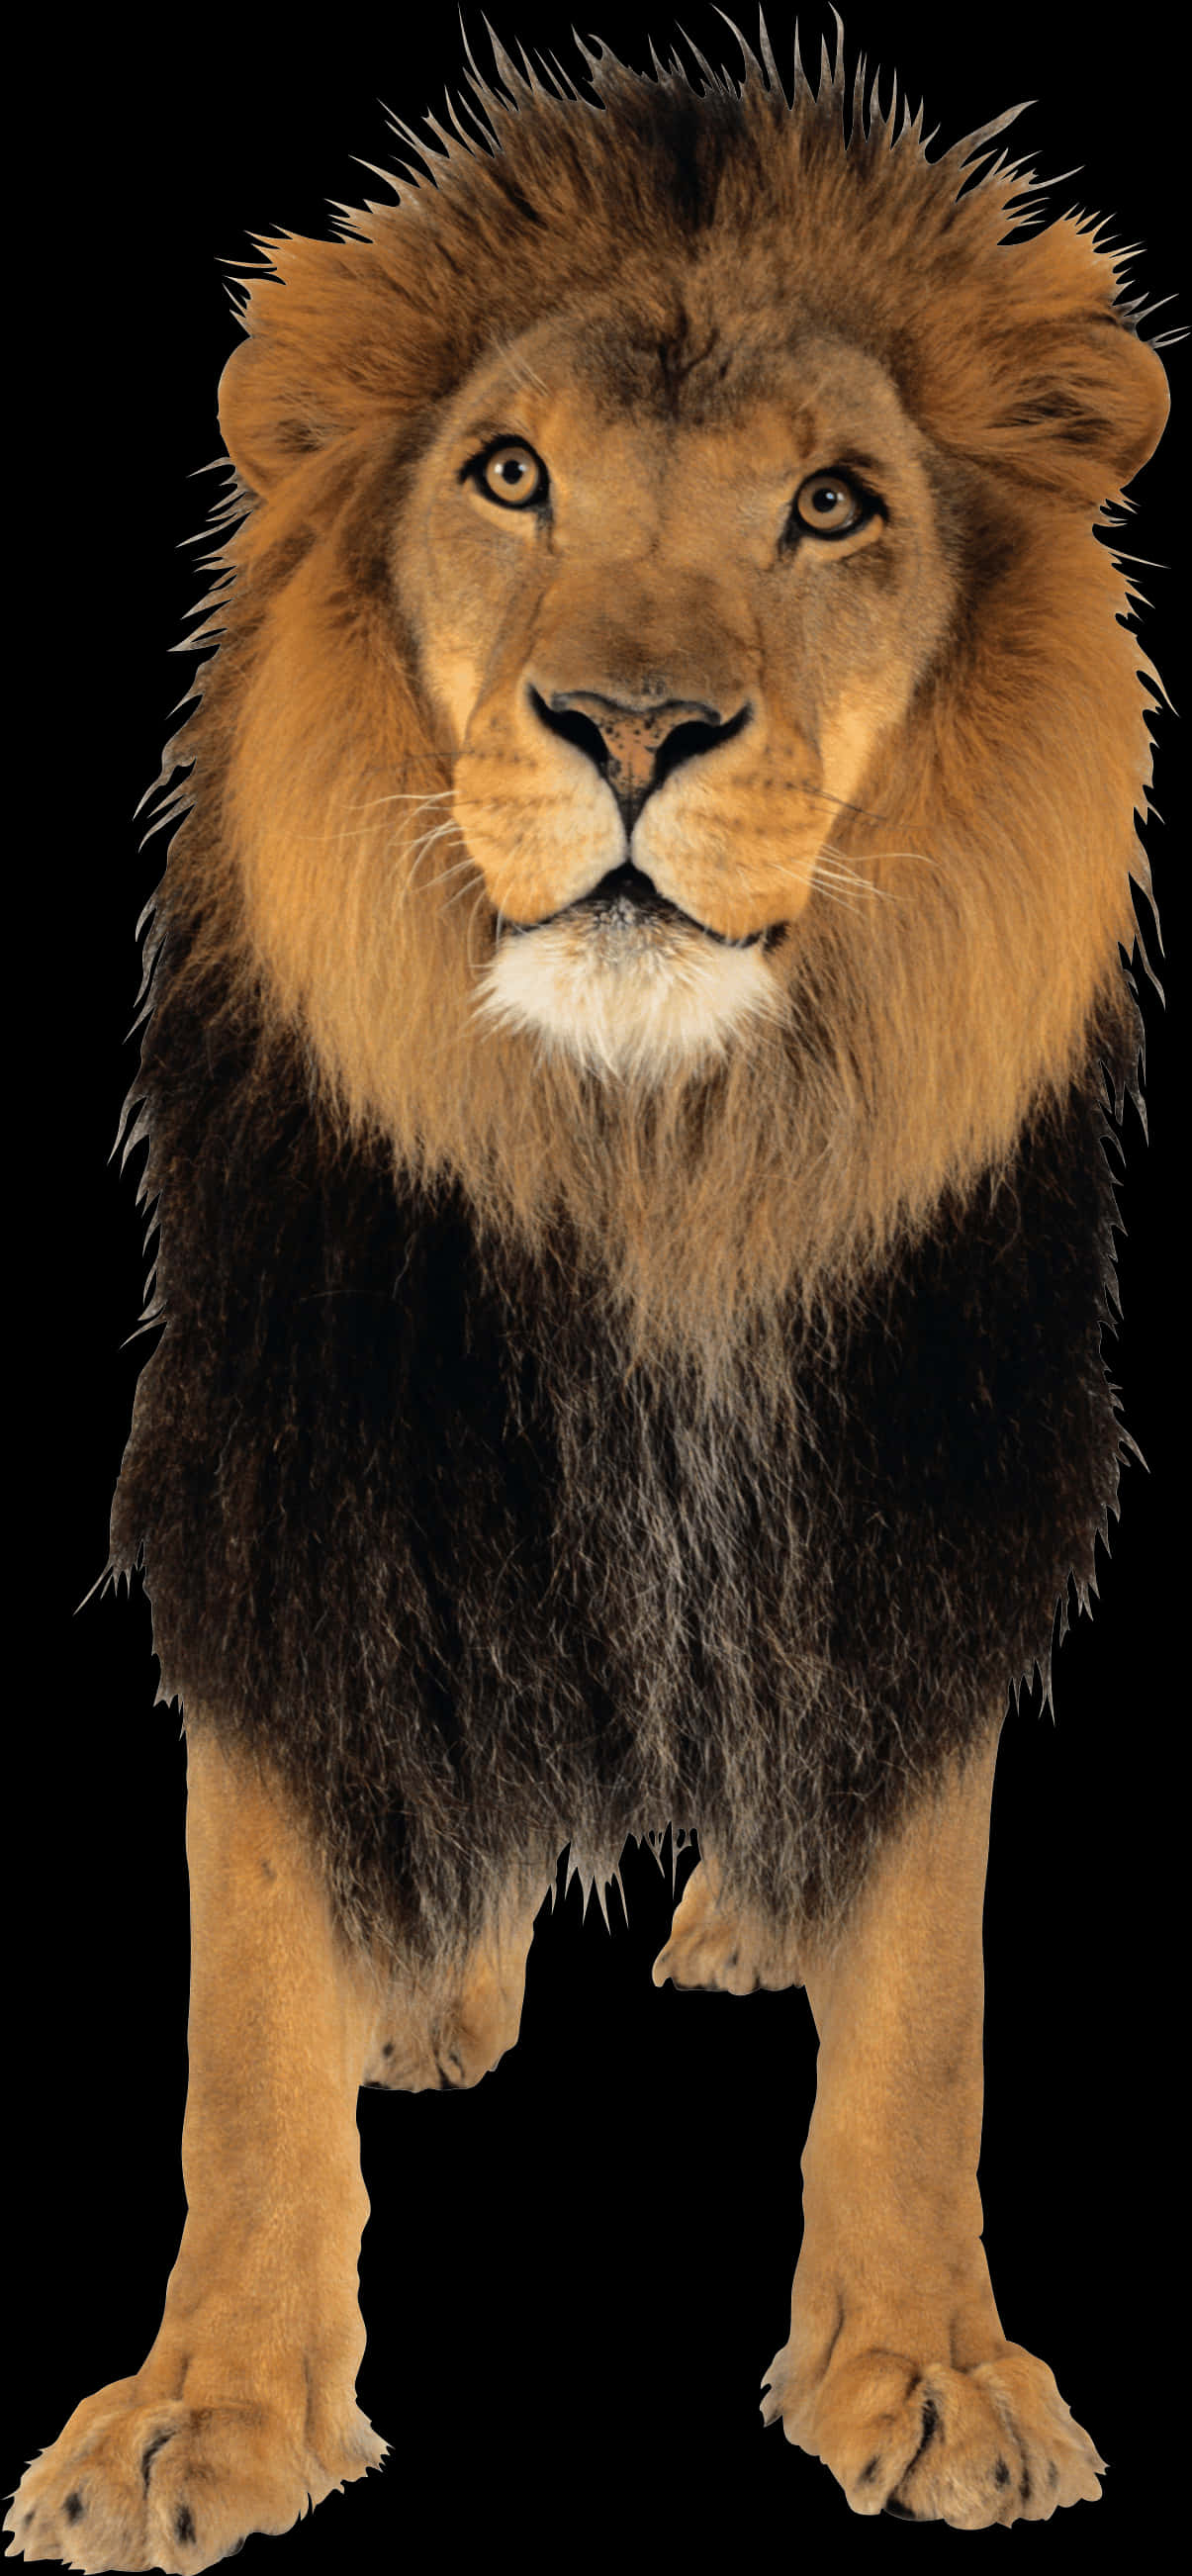 Majestic Lion Portrait PNG image